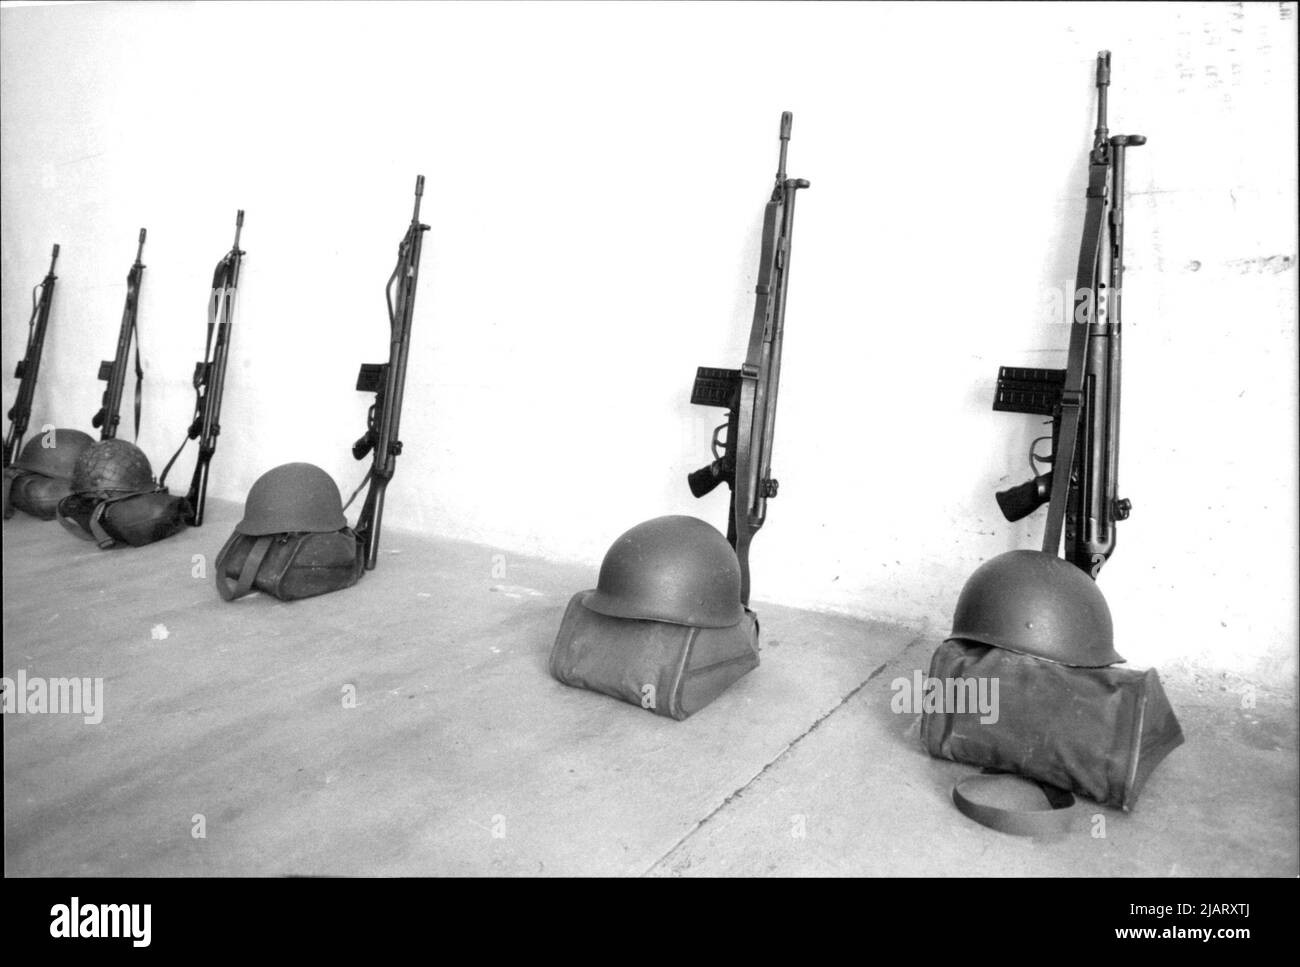 Gefechtshelme, Taschen und Gewehre der Bundeswehr ordentlich aufgereiht. Stock Photo